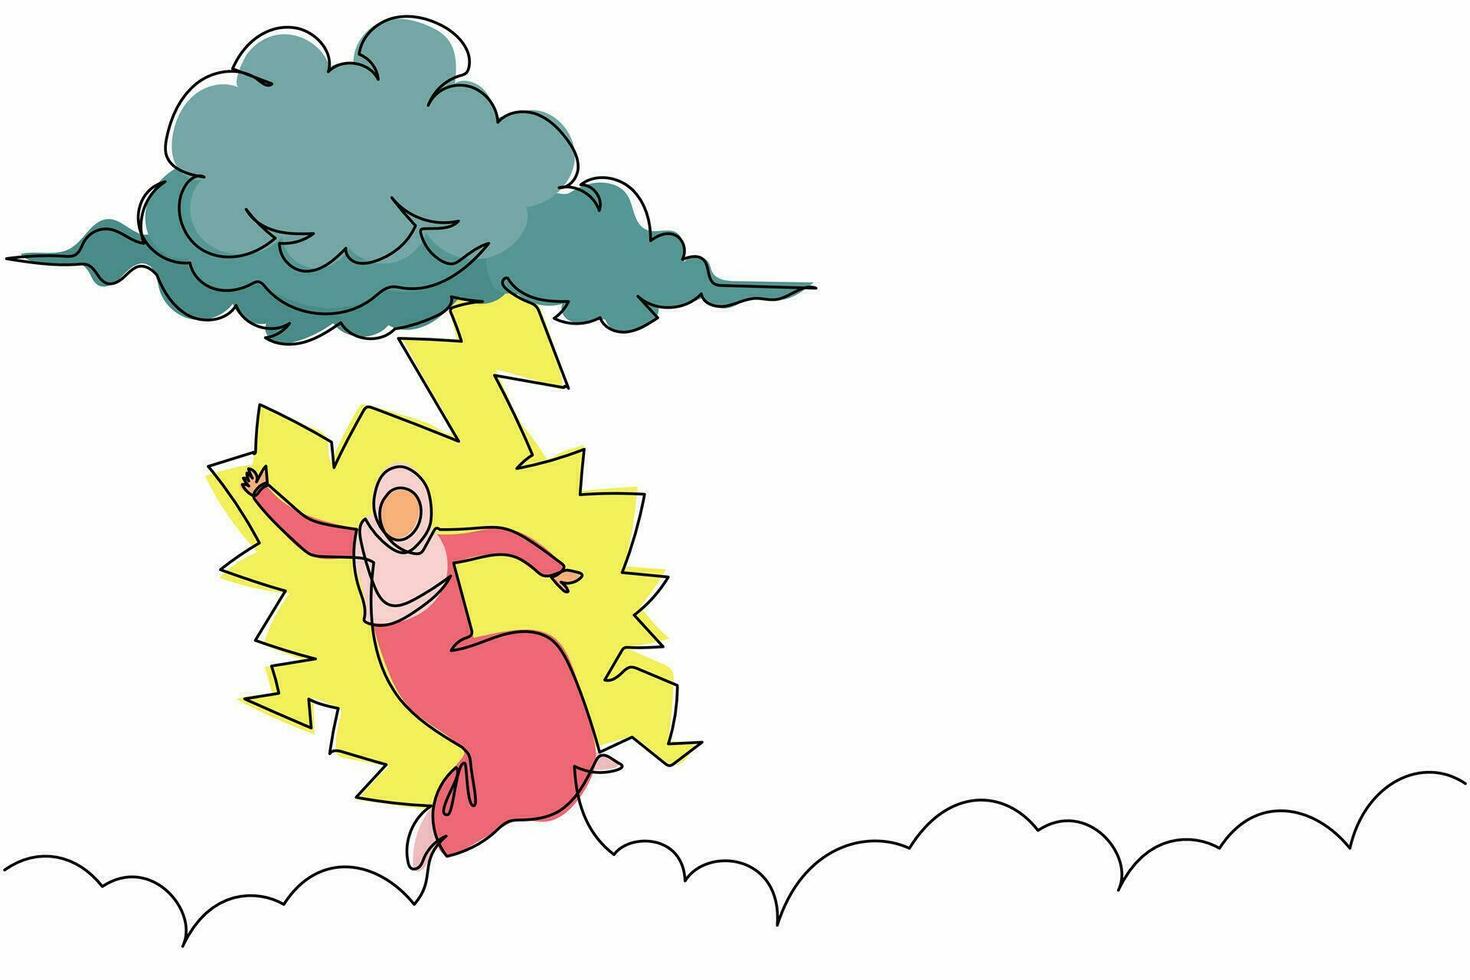 enda kontinuerlig linjeritning arabisk affärskvinna träffad av blixten eller åskan från molnet. känna otur på kontoret. elände, katastrof, risk, fara. en rad rita grafisk design vektorillustration vektor